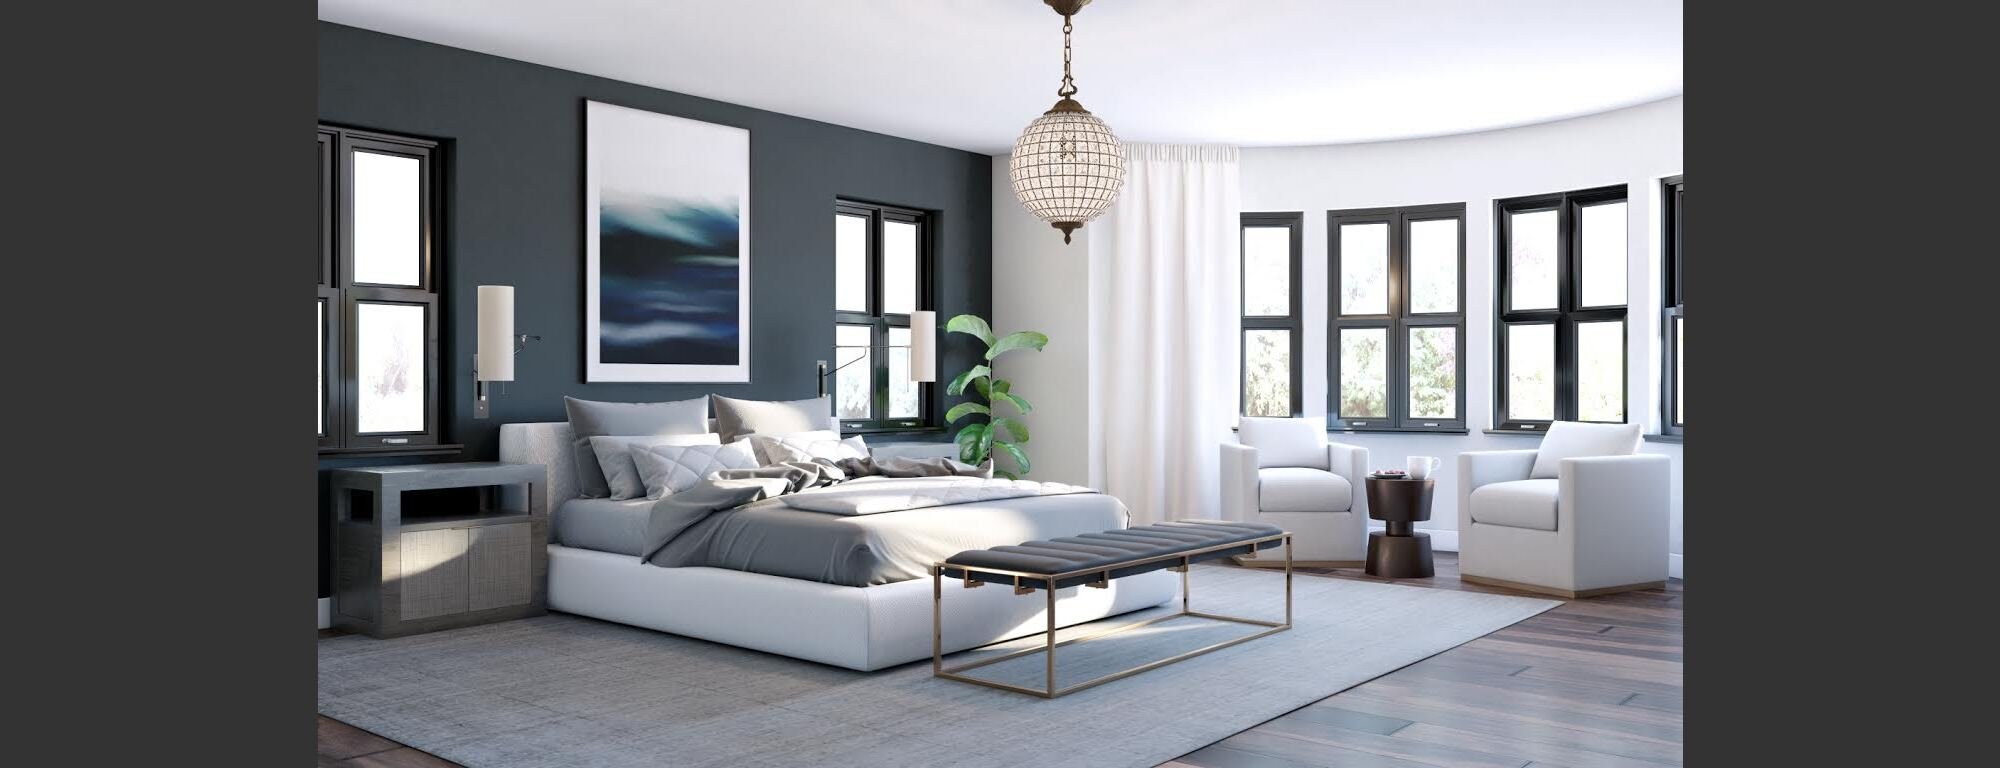 Online Bedroom Design online interior designers 3